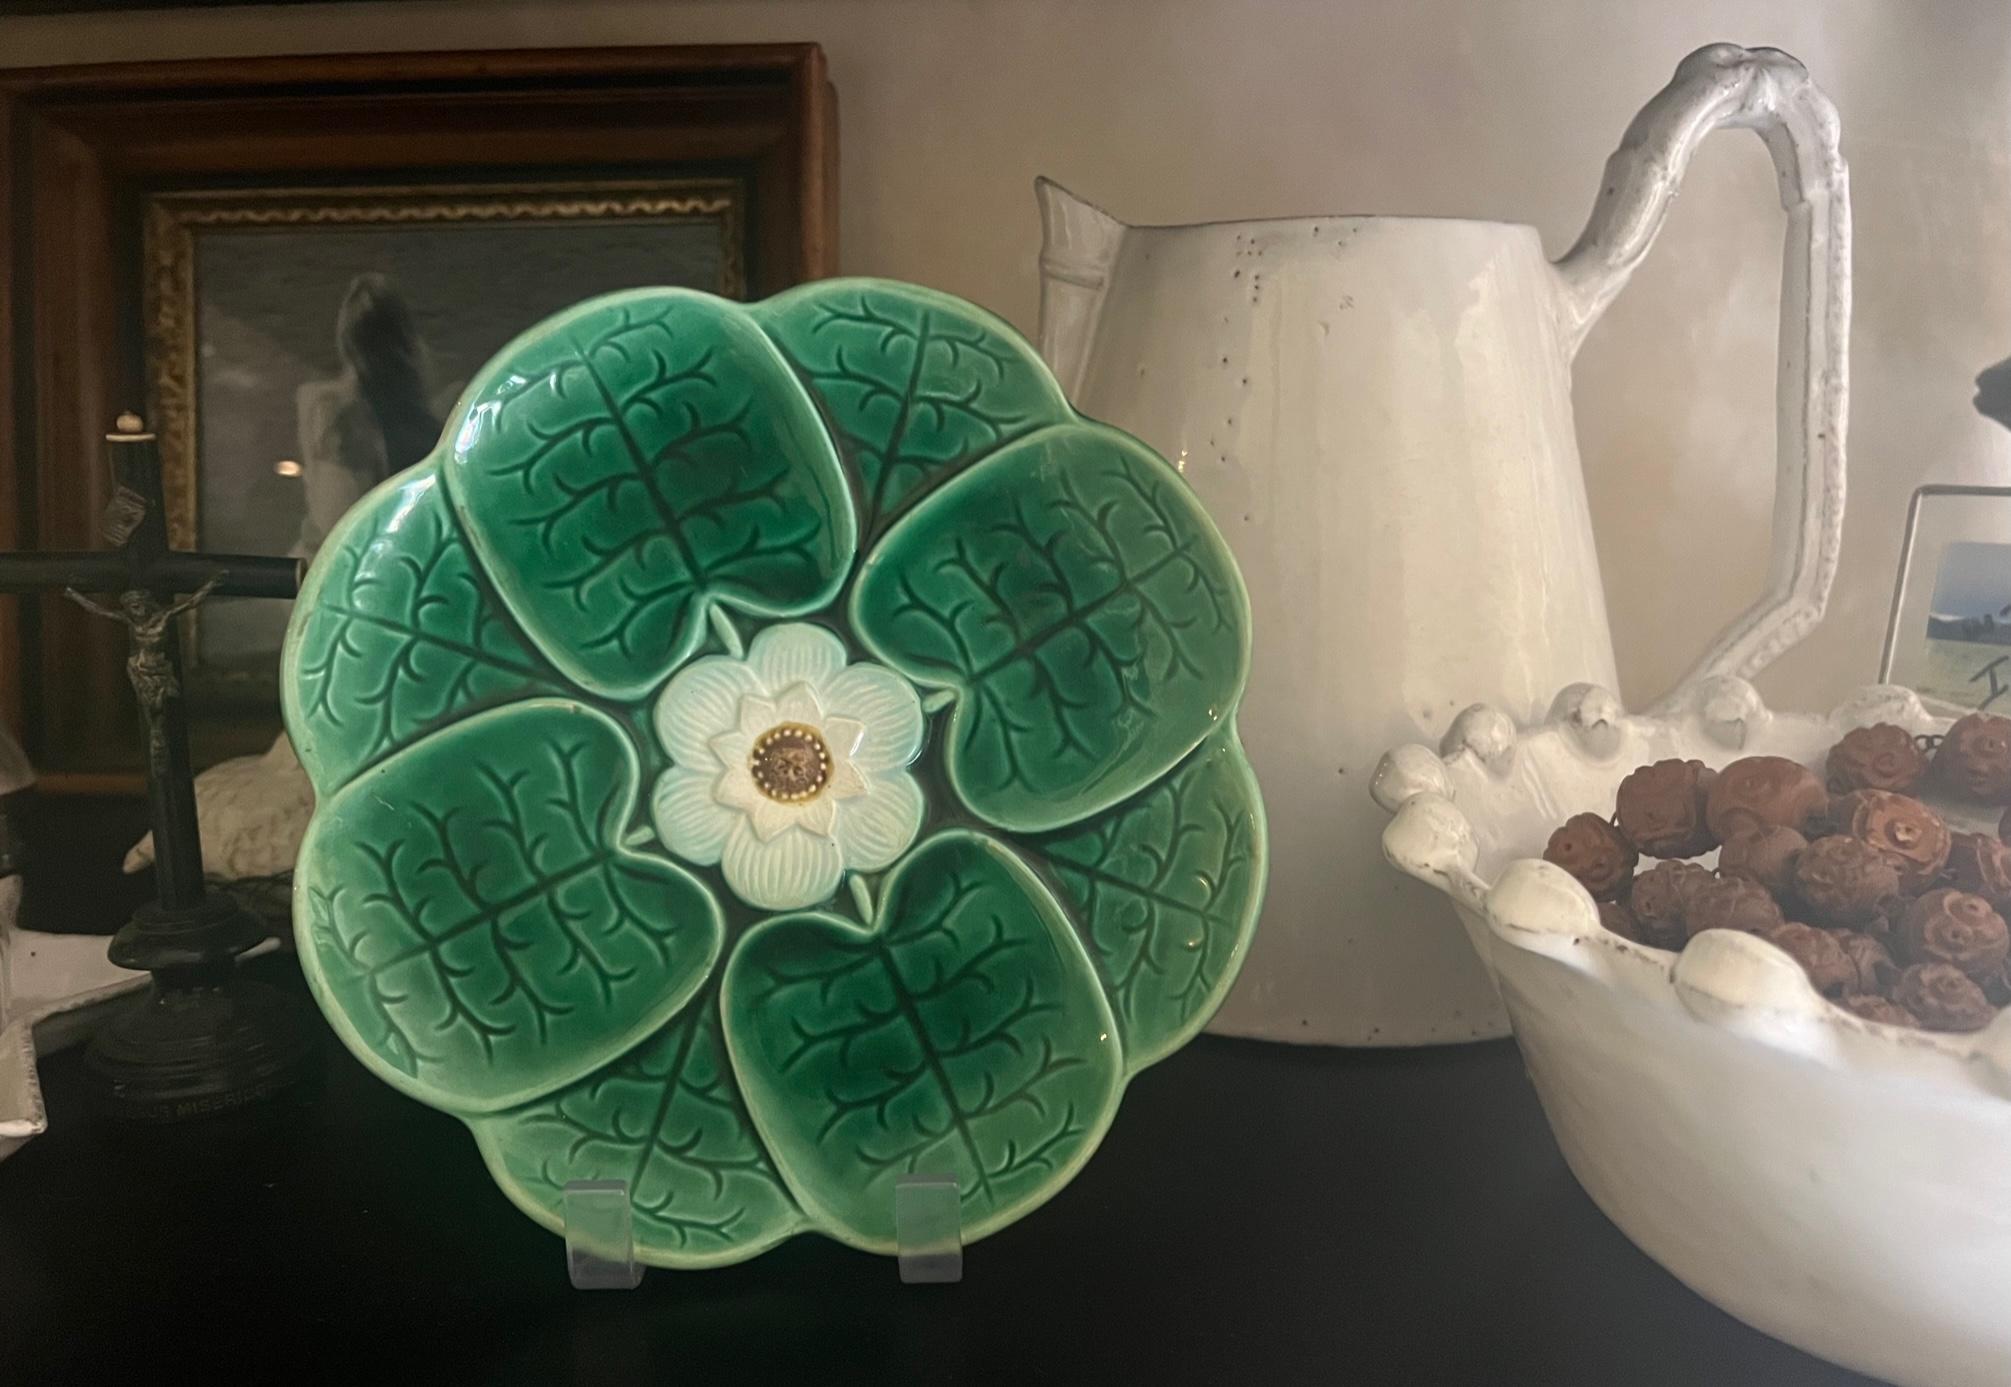 Antike Majolika von Adams und Bromley aus dem späten 19. Jahrhundert. Auf dem Teller sind leuchtend grüne Blätter zu sehen, die eine weiße Blüte in der Mitte umgeben, die einen leichten Blaustich aufweist.

Dies ist die kleinere der beiden Adams &